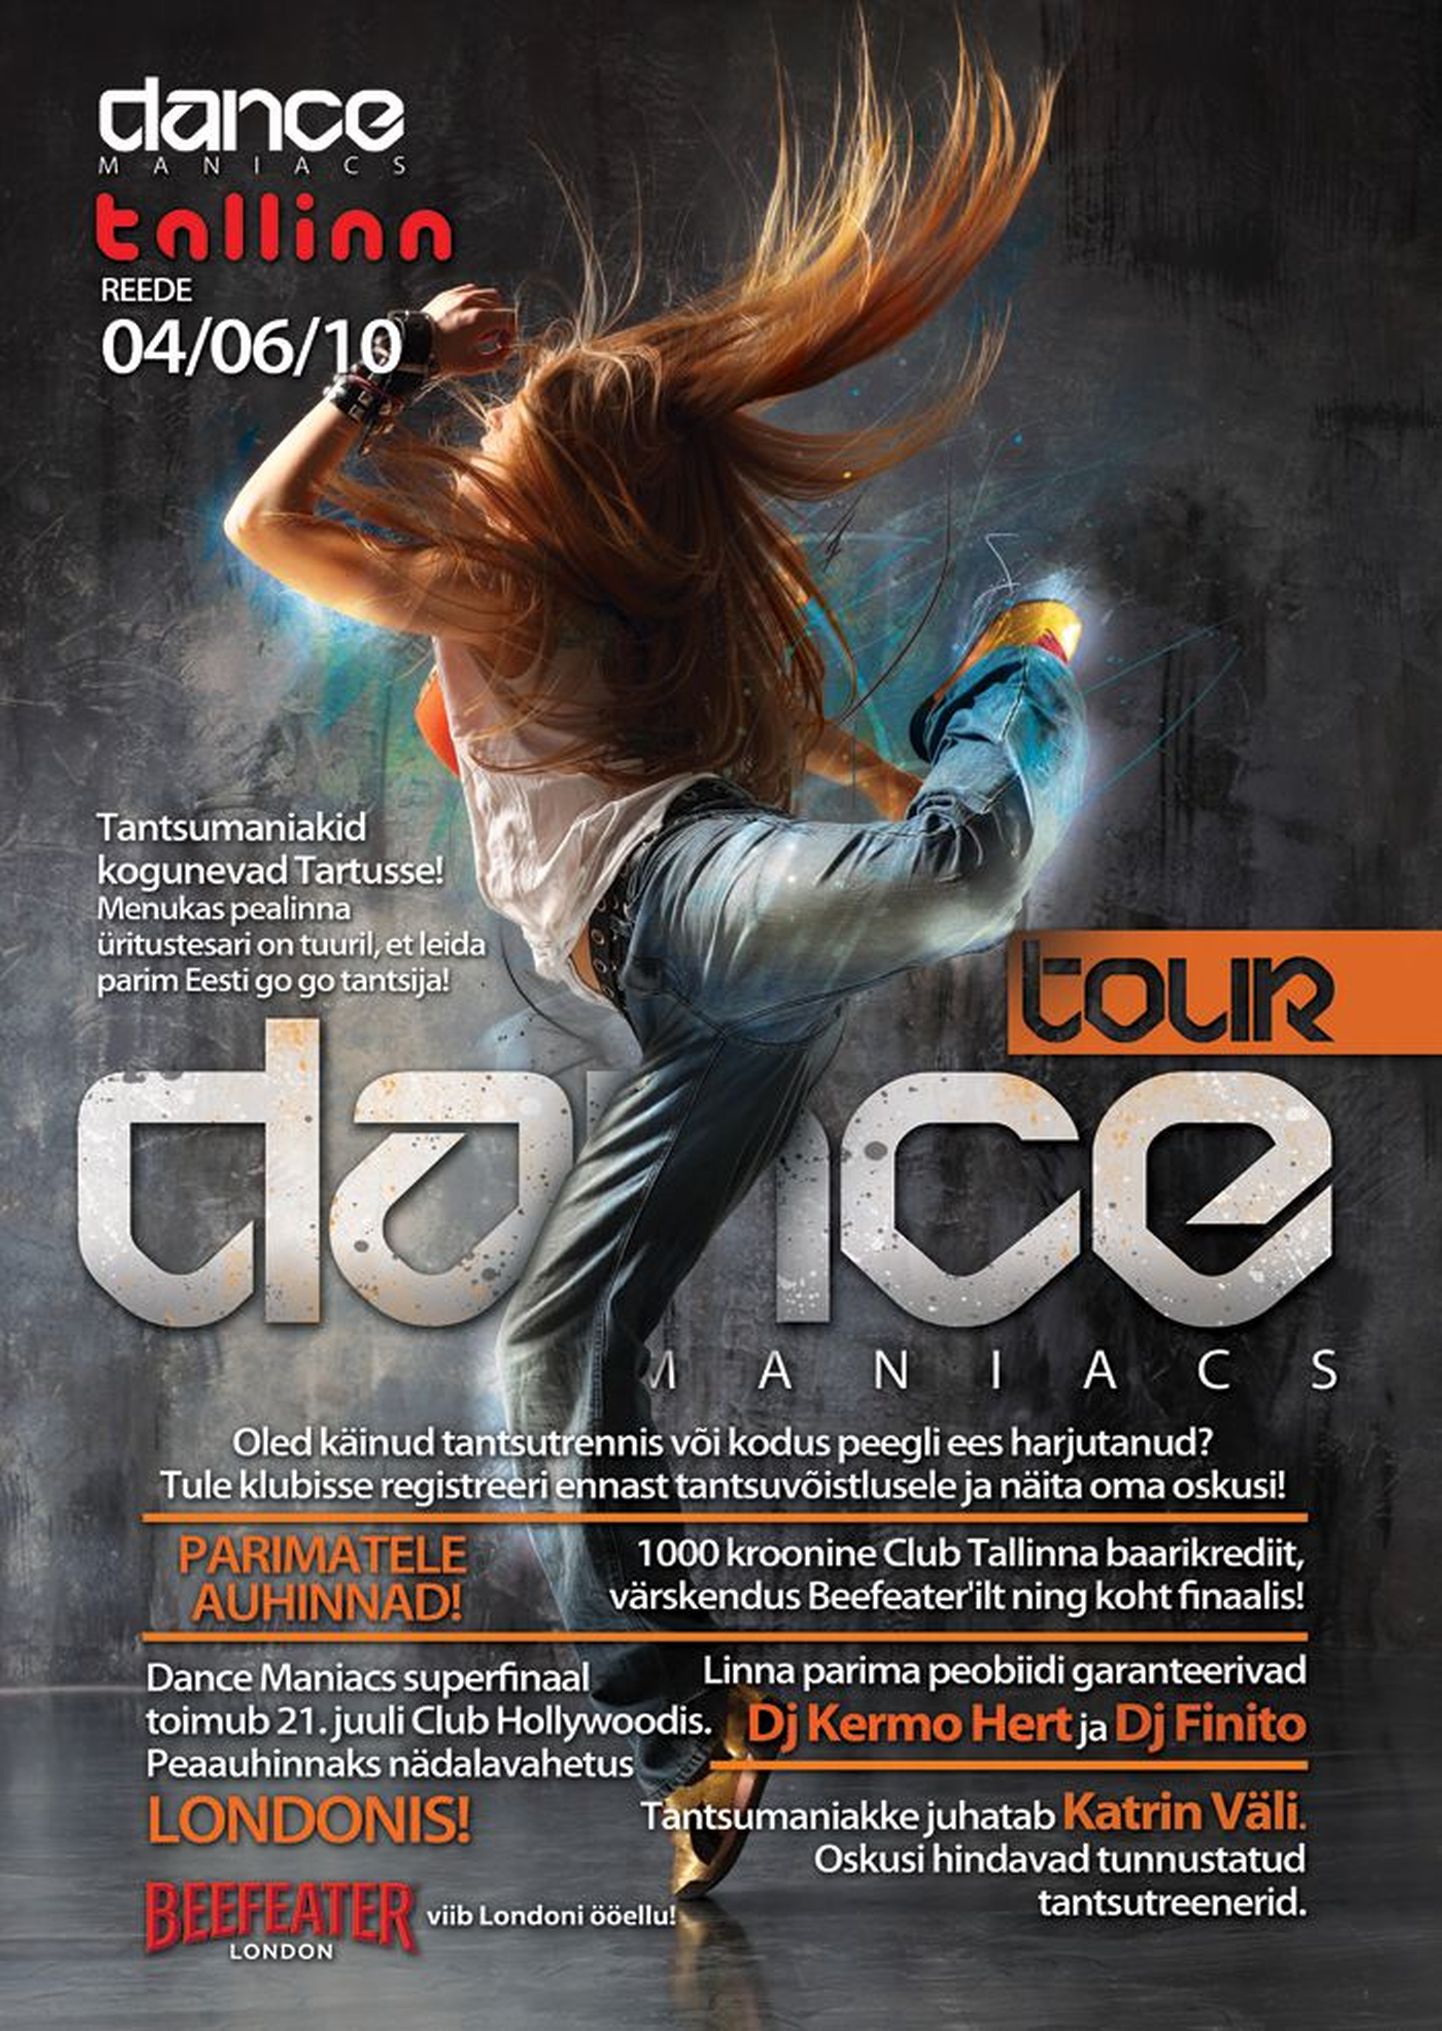 Reedel Club Tallinnas pealinna menukas peosari Dance Maniacs